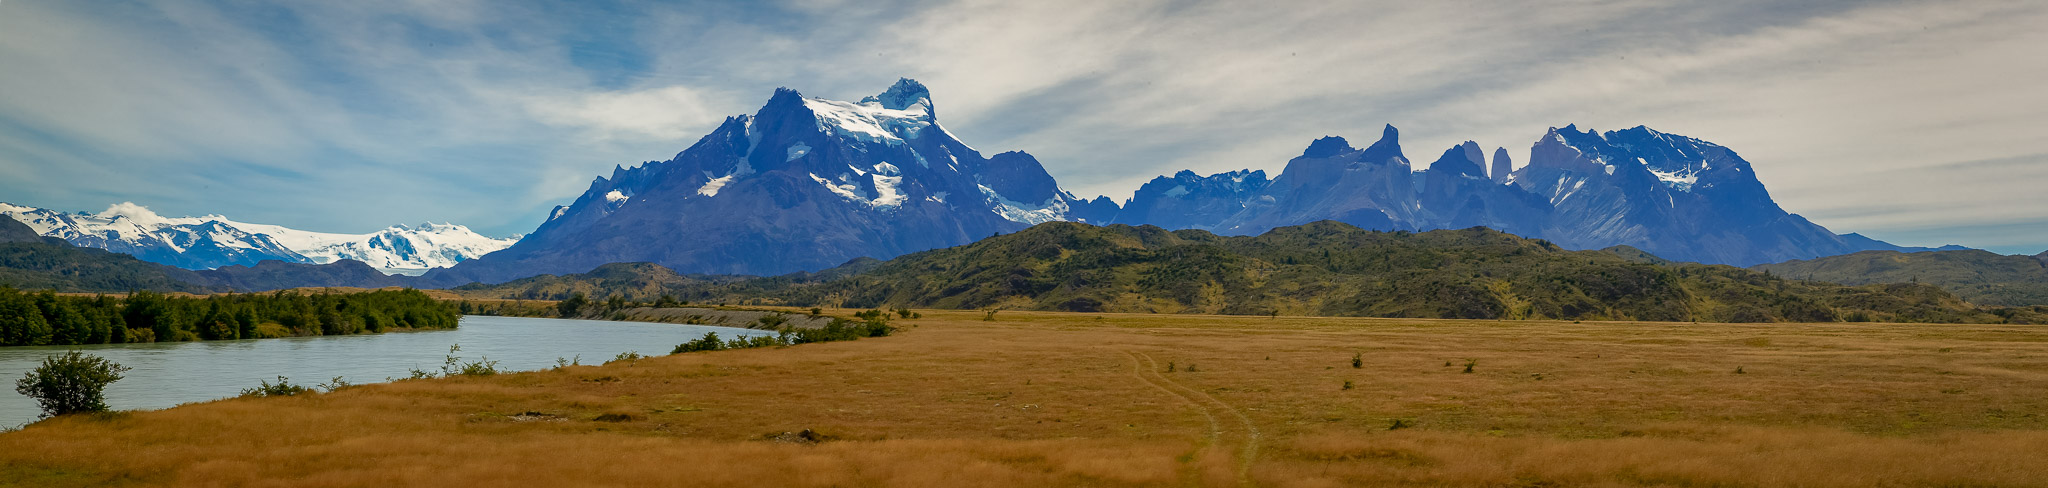 Cerro Paine Grande, Torres del Paine